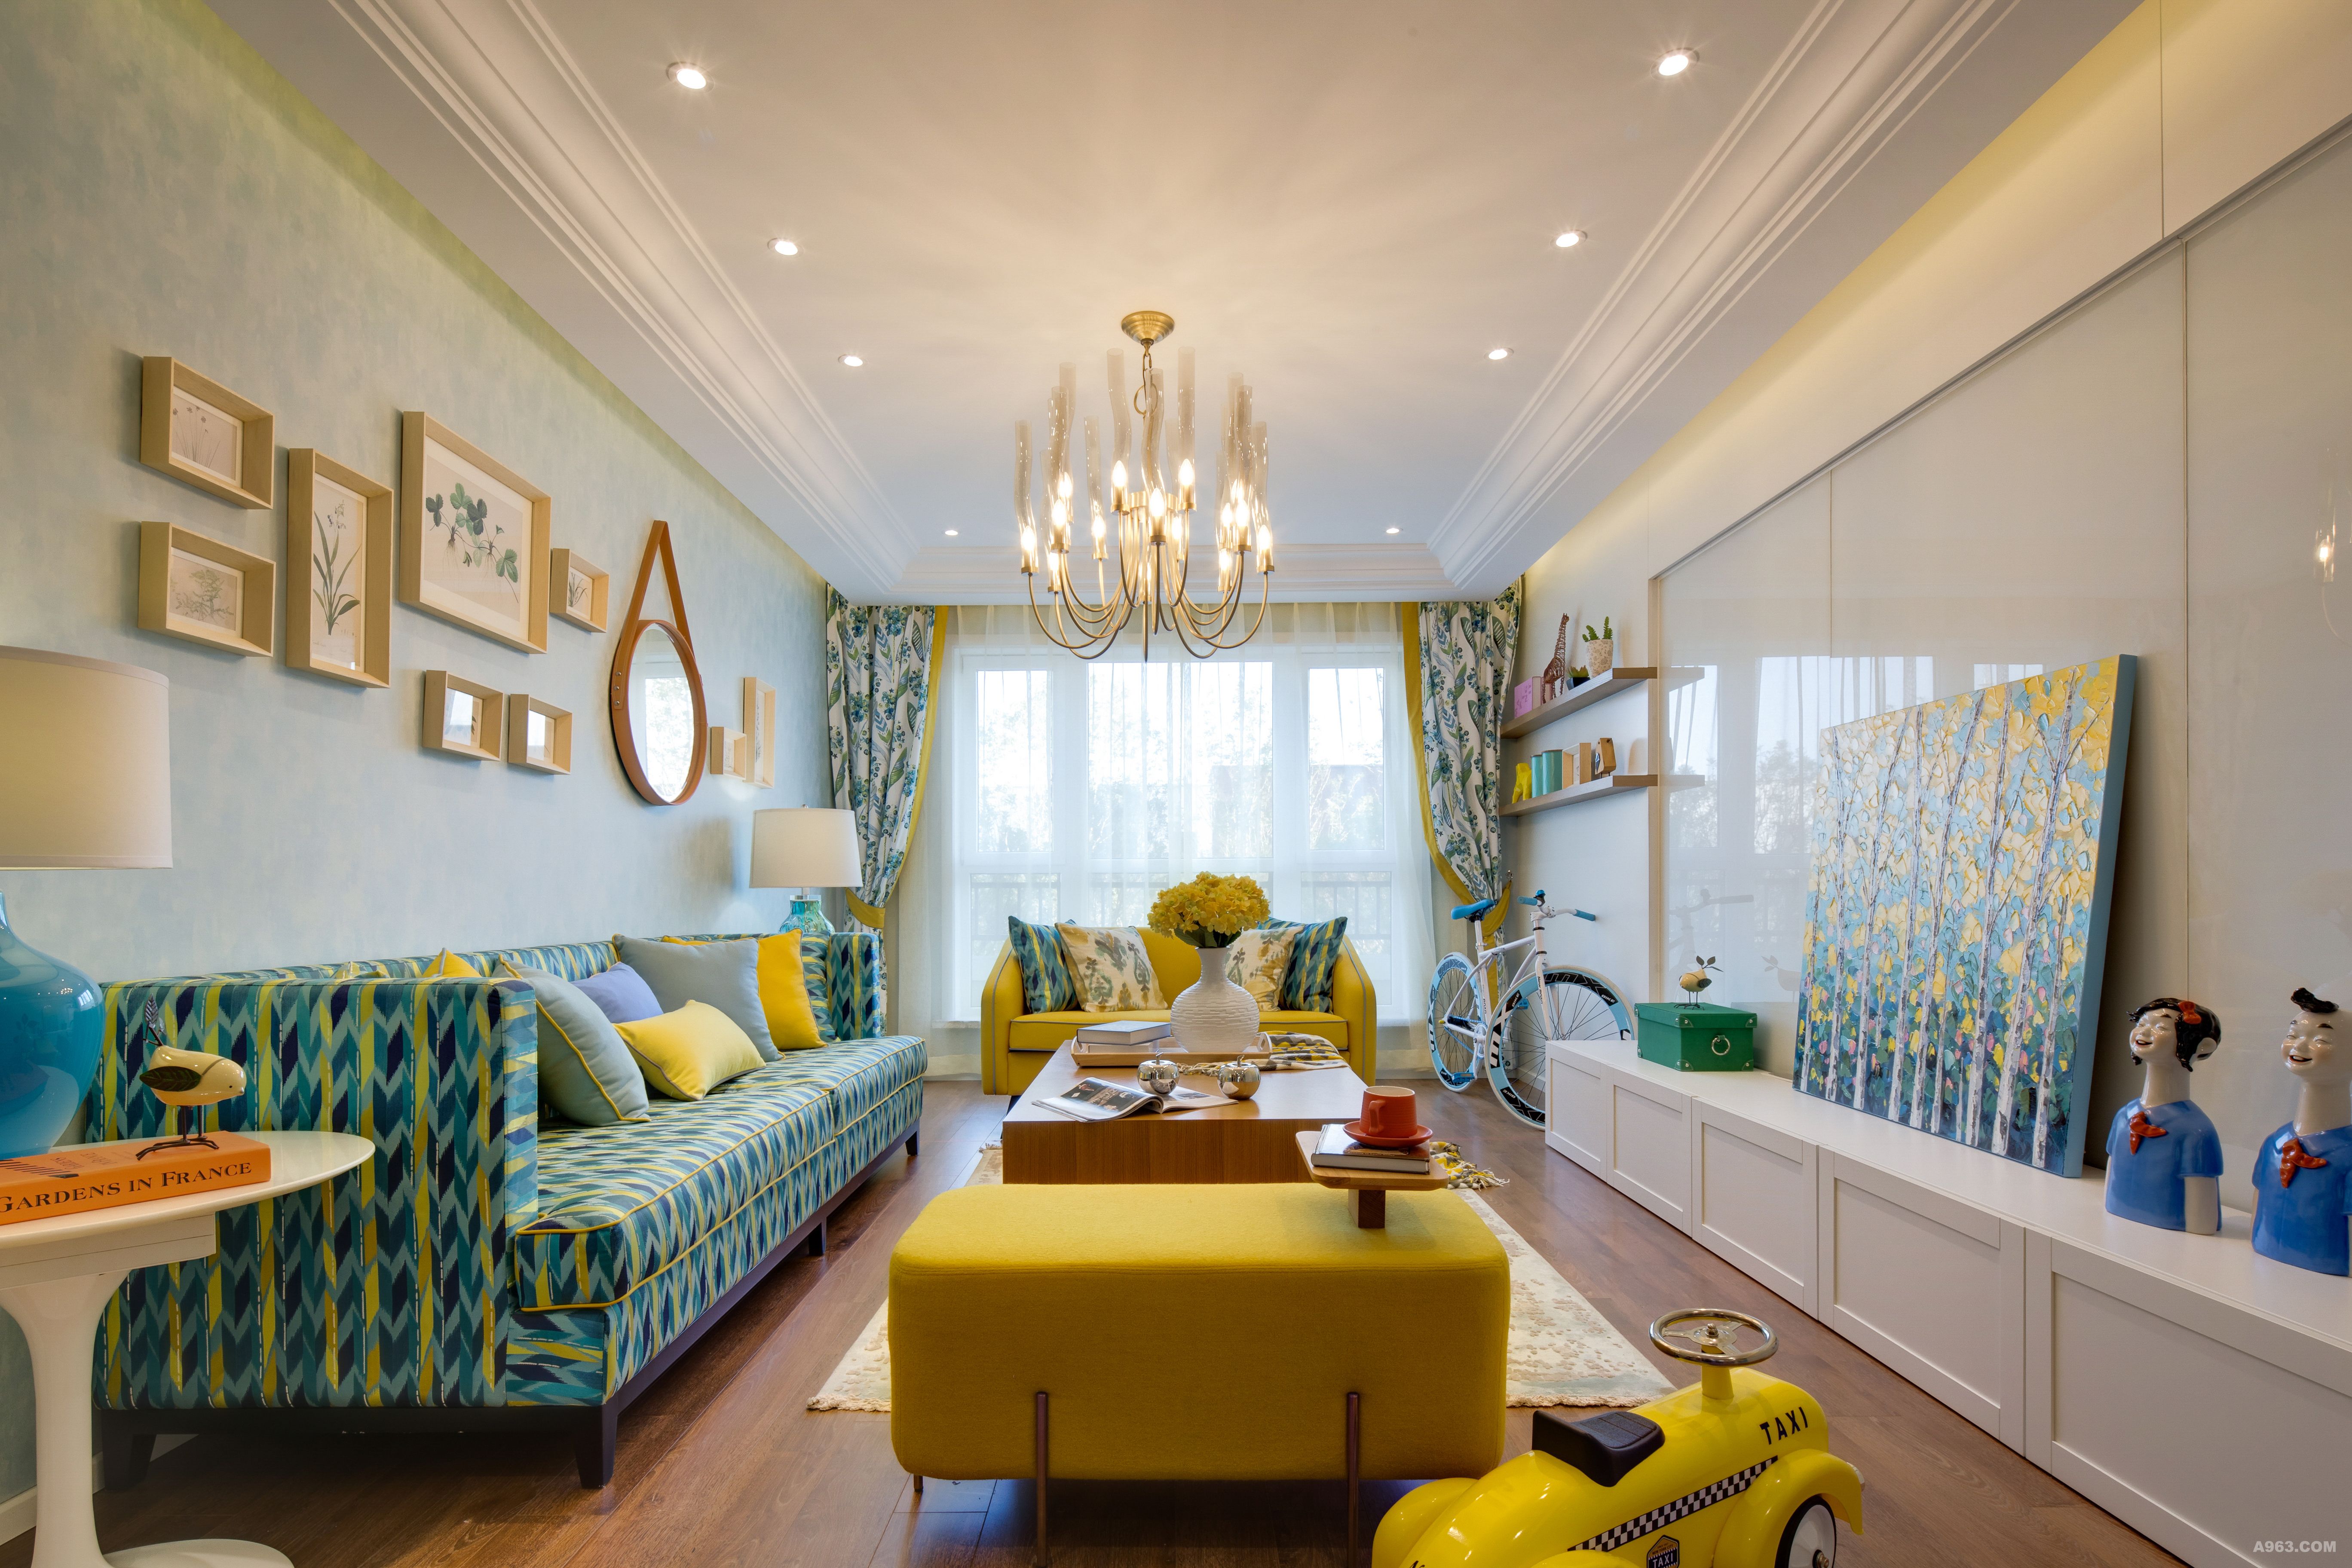 蓝色的壁纸搭配黄色,蓝色的沙发,黄蓝颜色的搭配,使整个屋子都特别